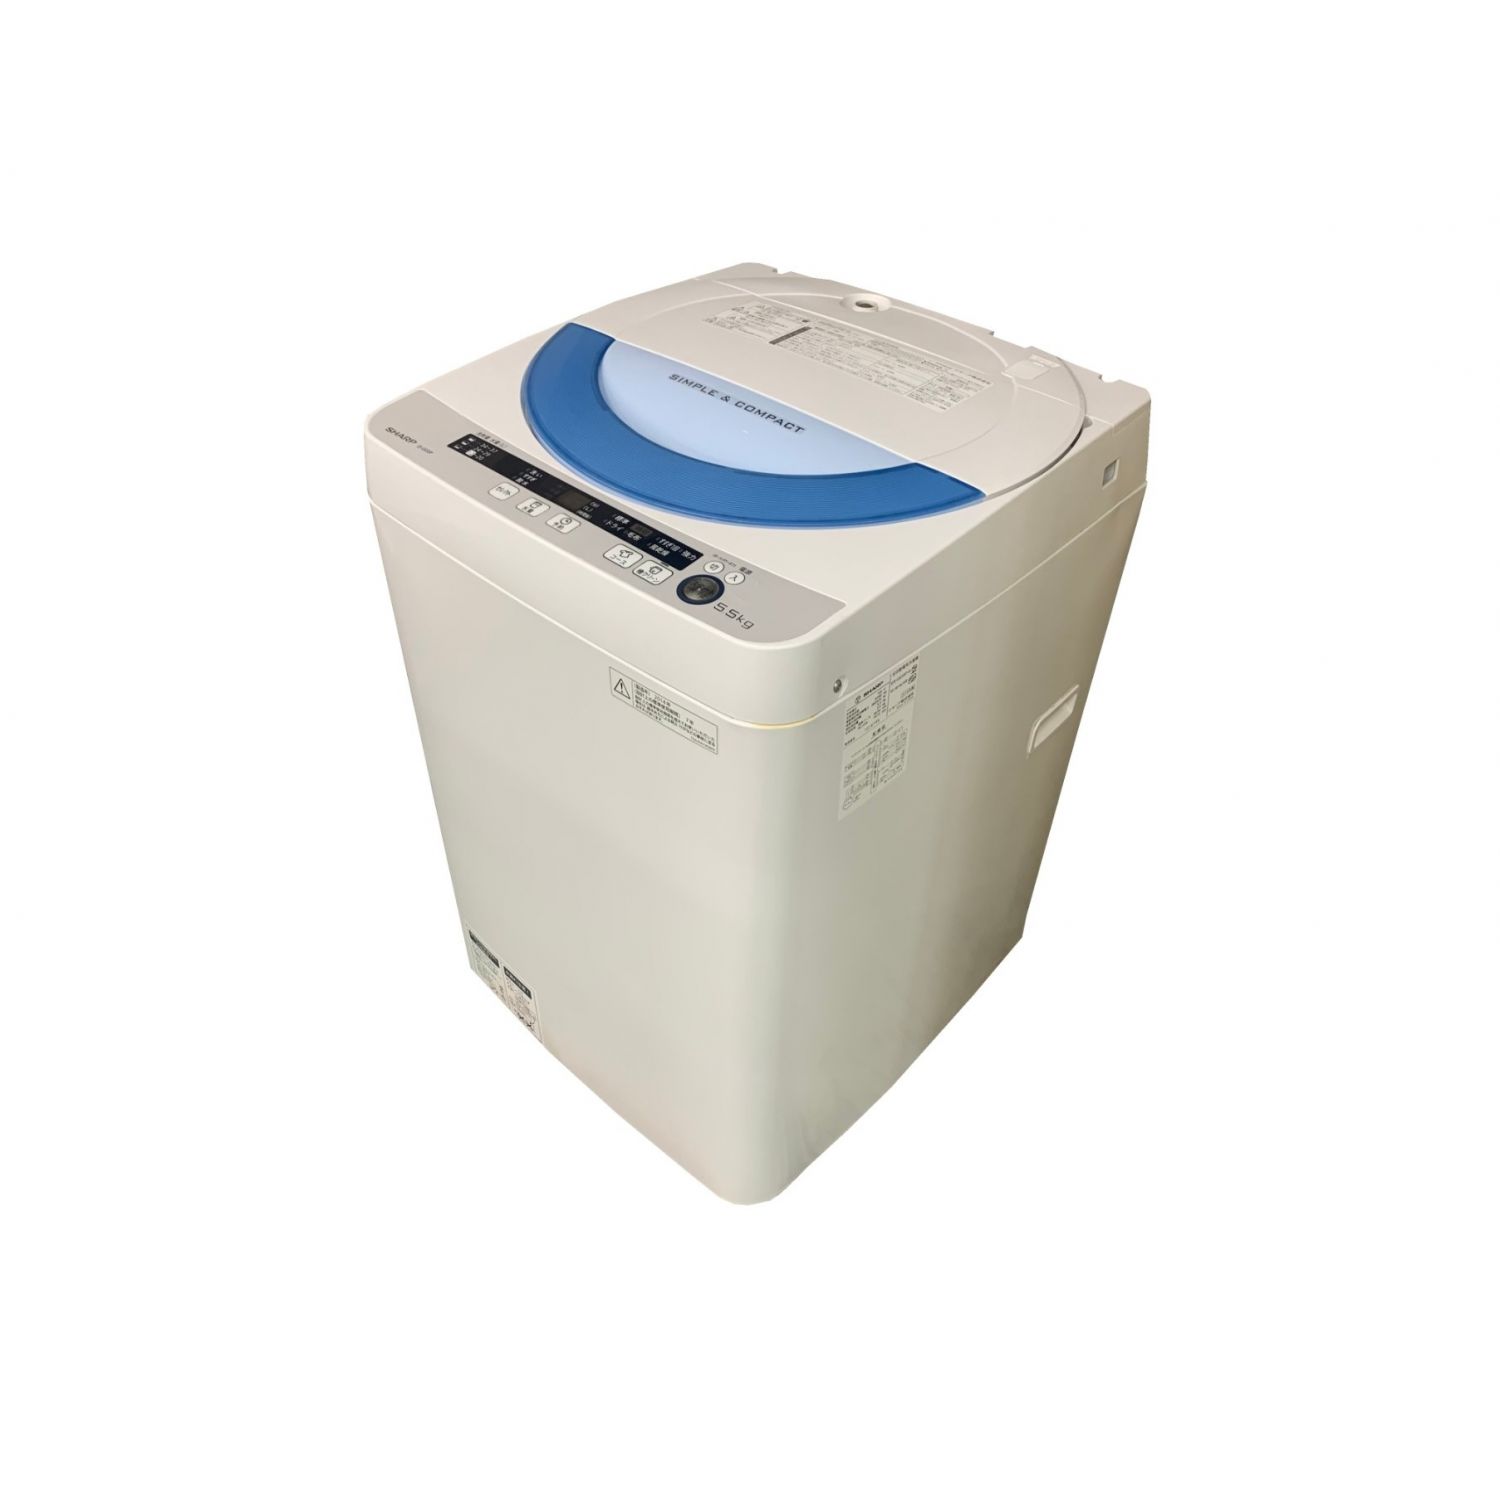 大阪市送料無料‼️SHARP 2020年製 洗濯機 5.5kg クリーニング済送料無料範囲